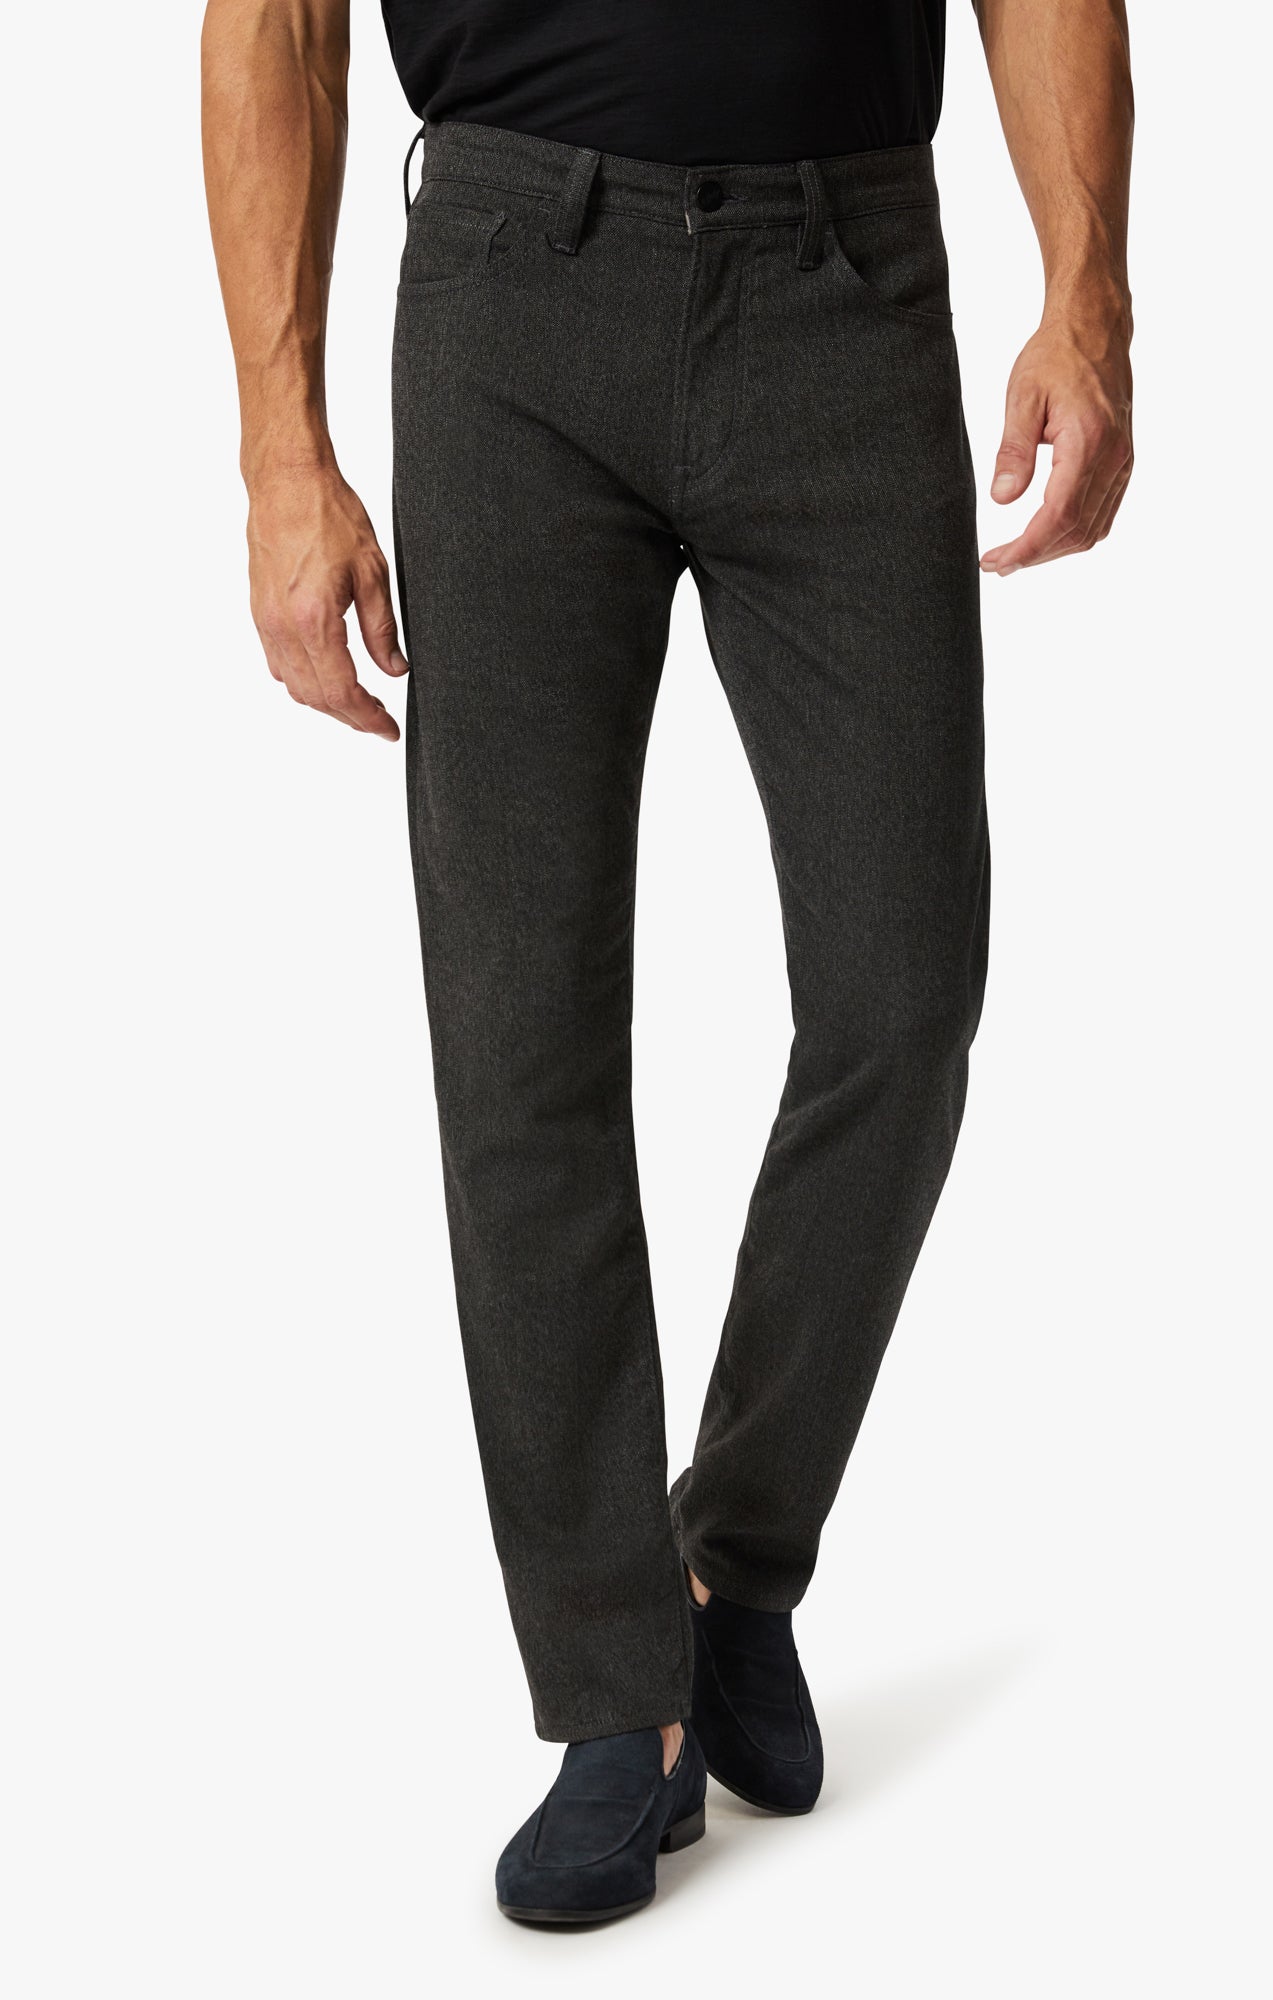 Black Colour Formal Trousers for Men - Elite Trouser by Aristobrat